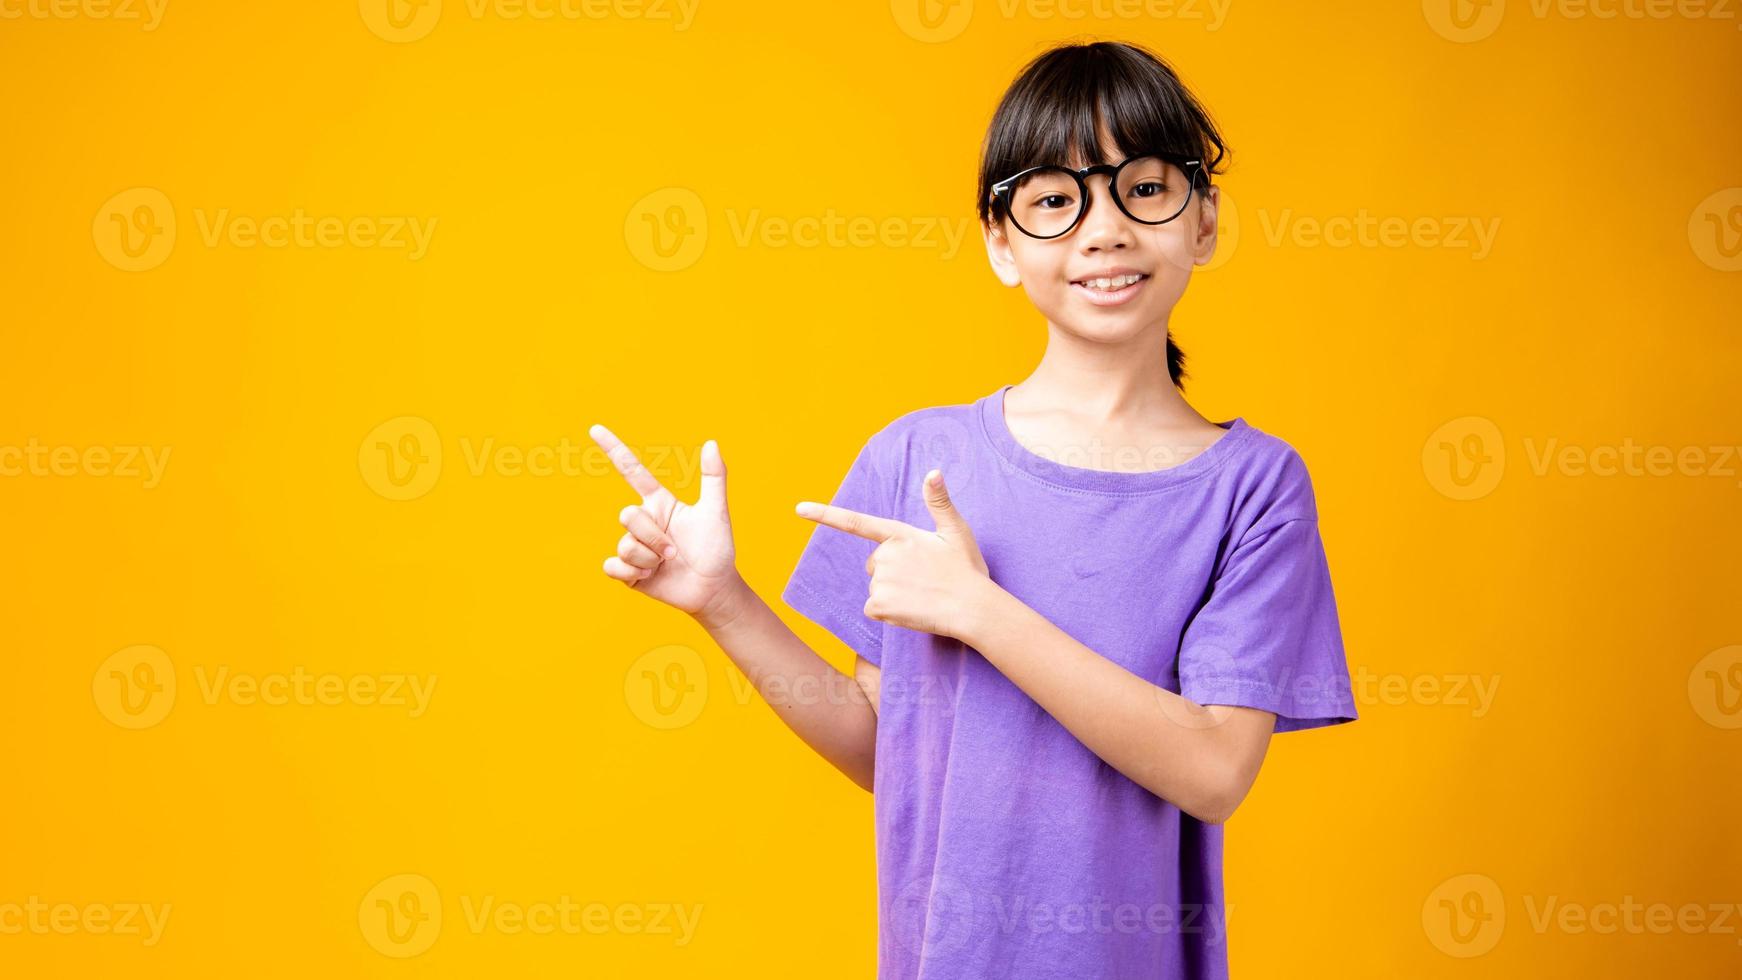 giovane ragazza asiatica in camicia viola e occhiali che punta a copia spazio in studio con sfondo giallo foto